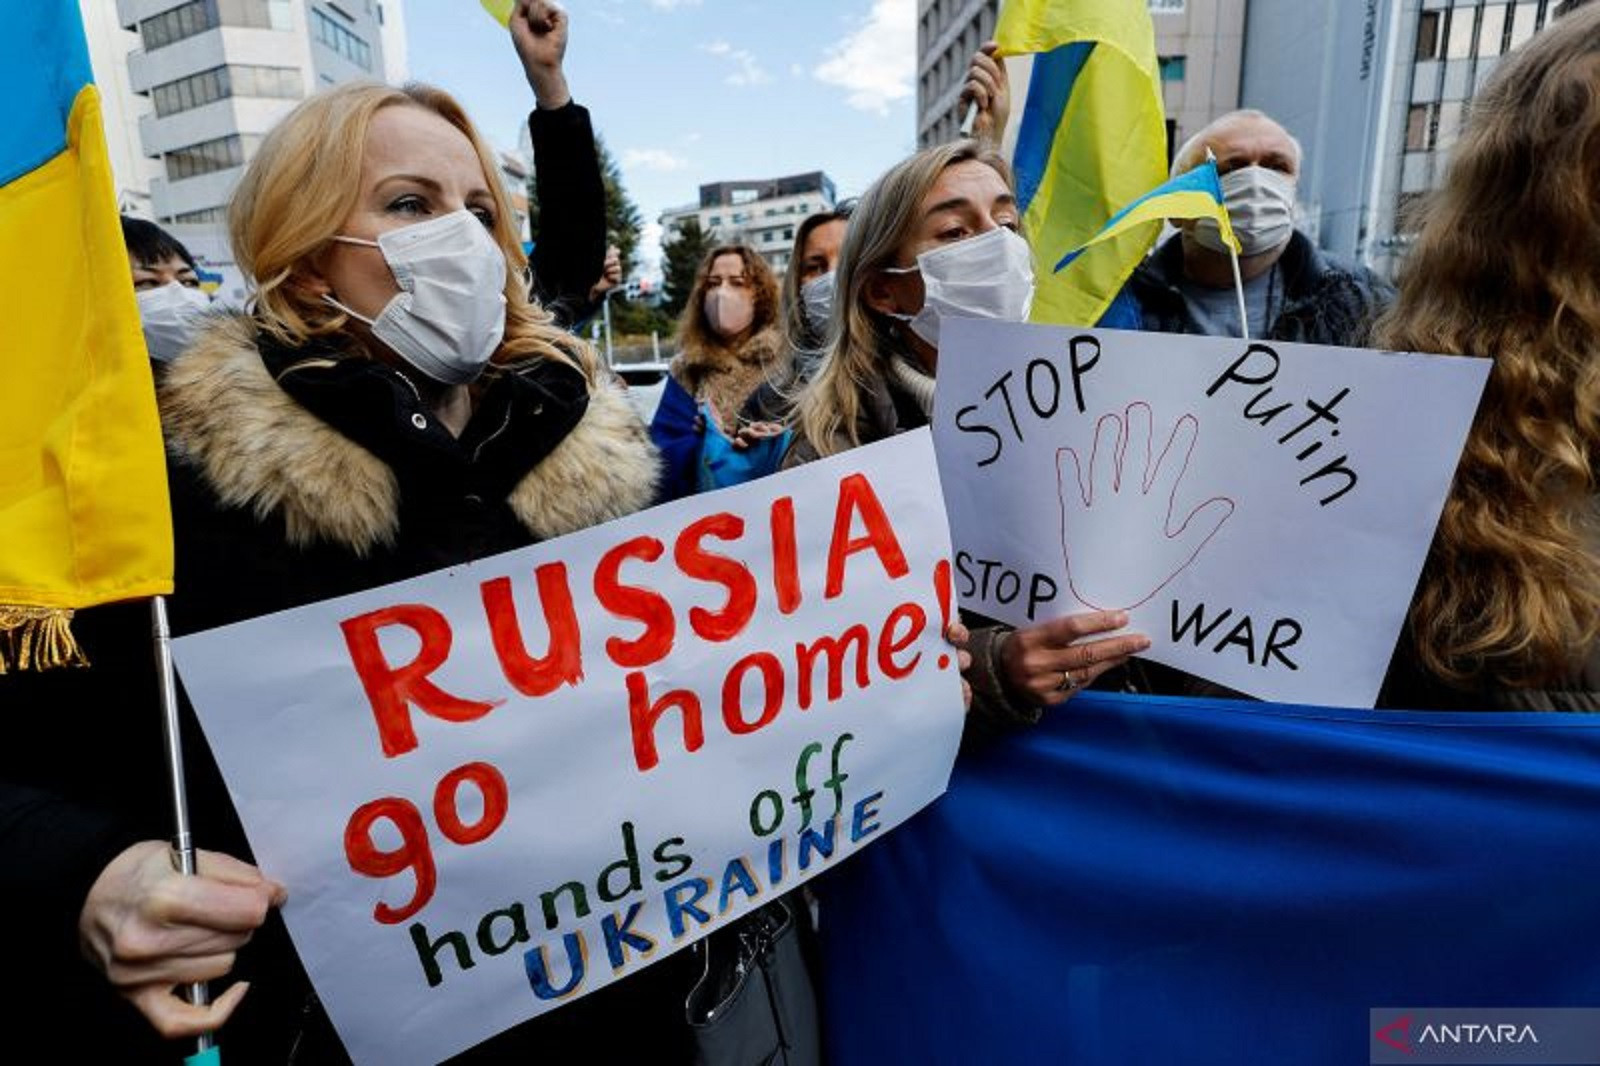 Krisis Kemanusiaan di Ukraina Tak Kunjung Usai Akibat Invasi Rusia - JPNN.com